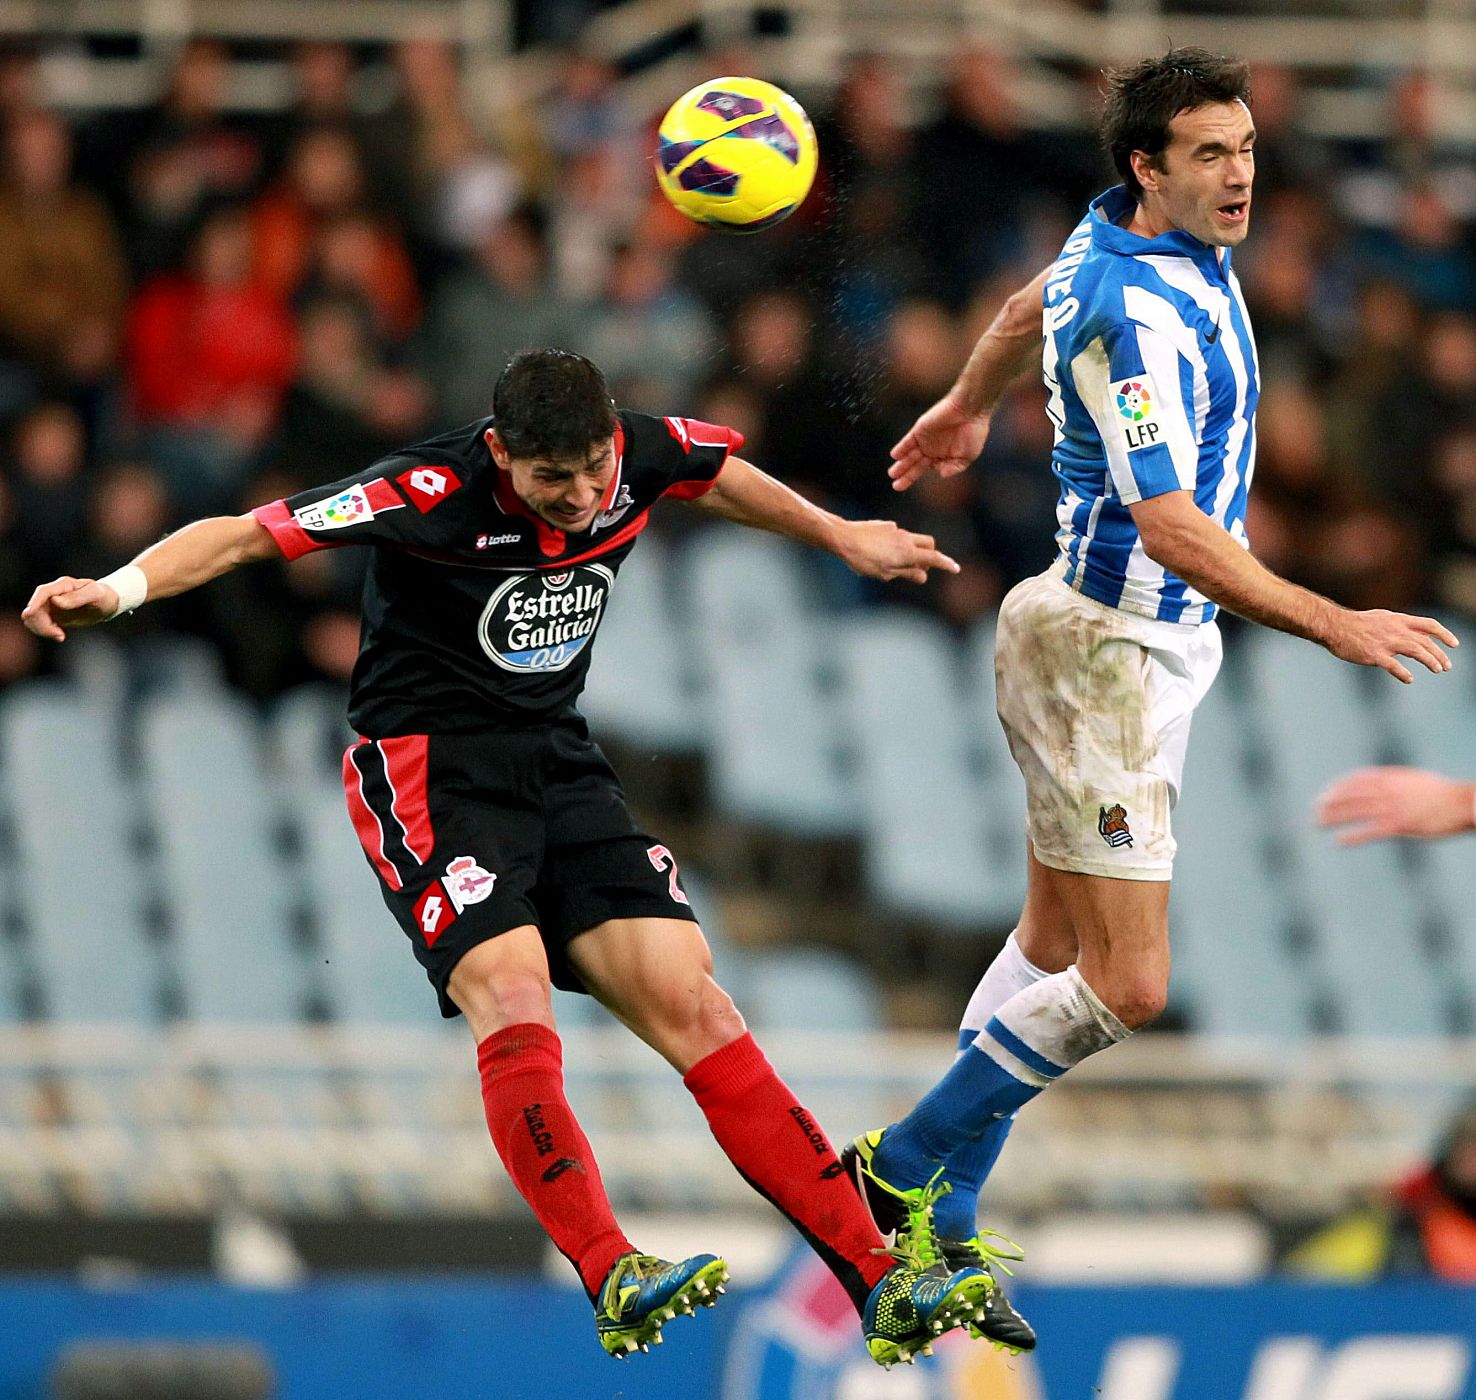 El centrocampista de la Real Sociedad Xabi Prieto, lucha por el balón con Jesús Vázquez, del R.C. Deportivo de La Coruña.